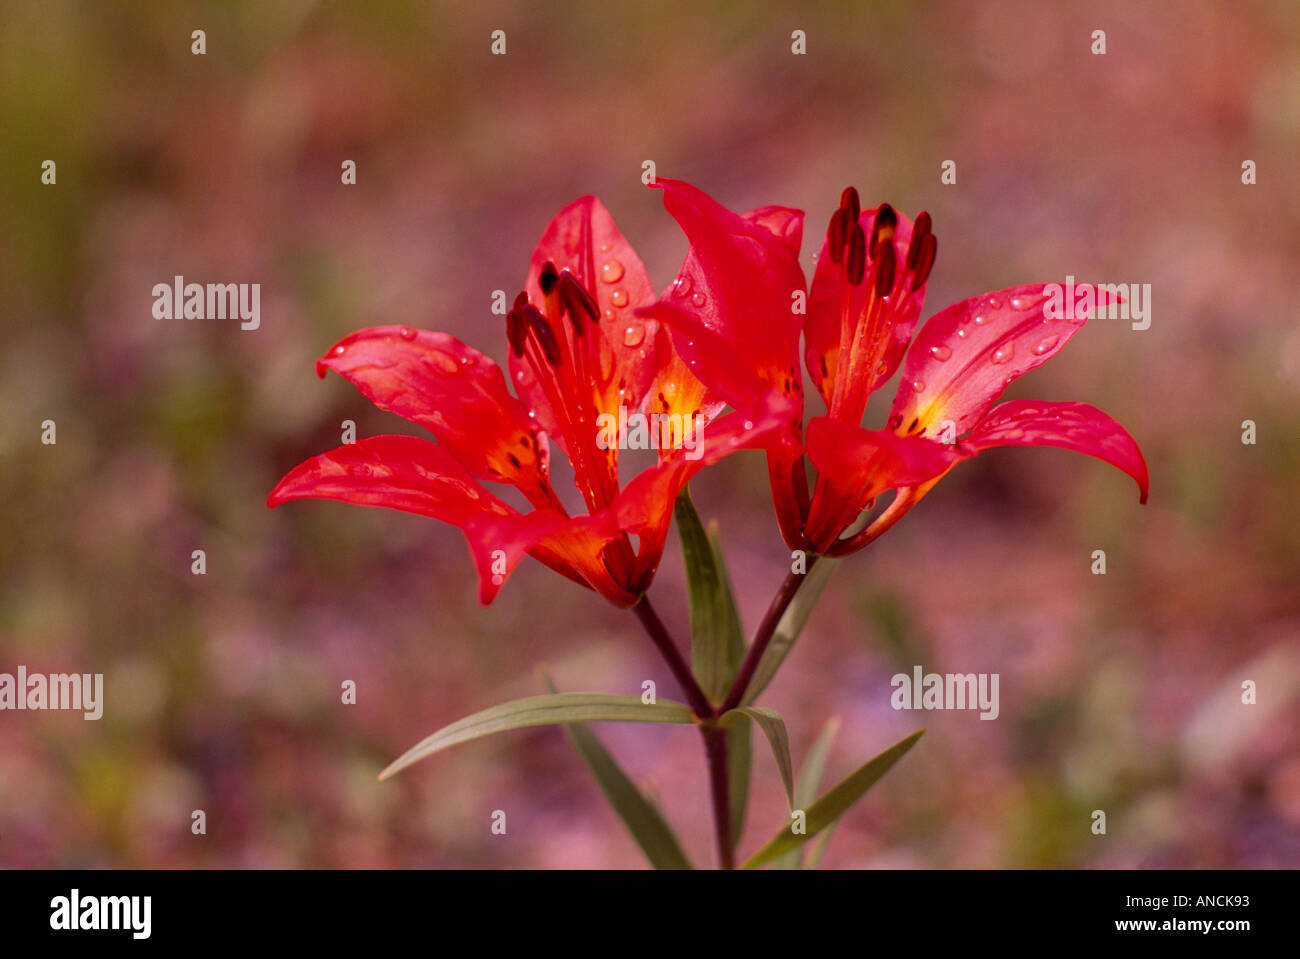 Giglio di legno (Lilium philadelphicum) in Bloom - rosso fiori selvatici / fiori selvatici che fiorisce in primavera, BC, British Columbia, Canada Foto Stock